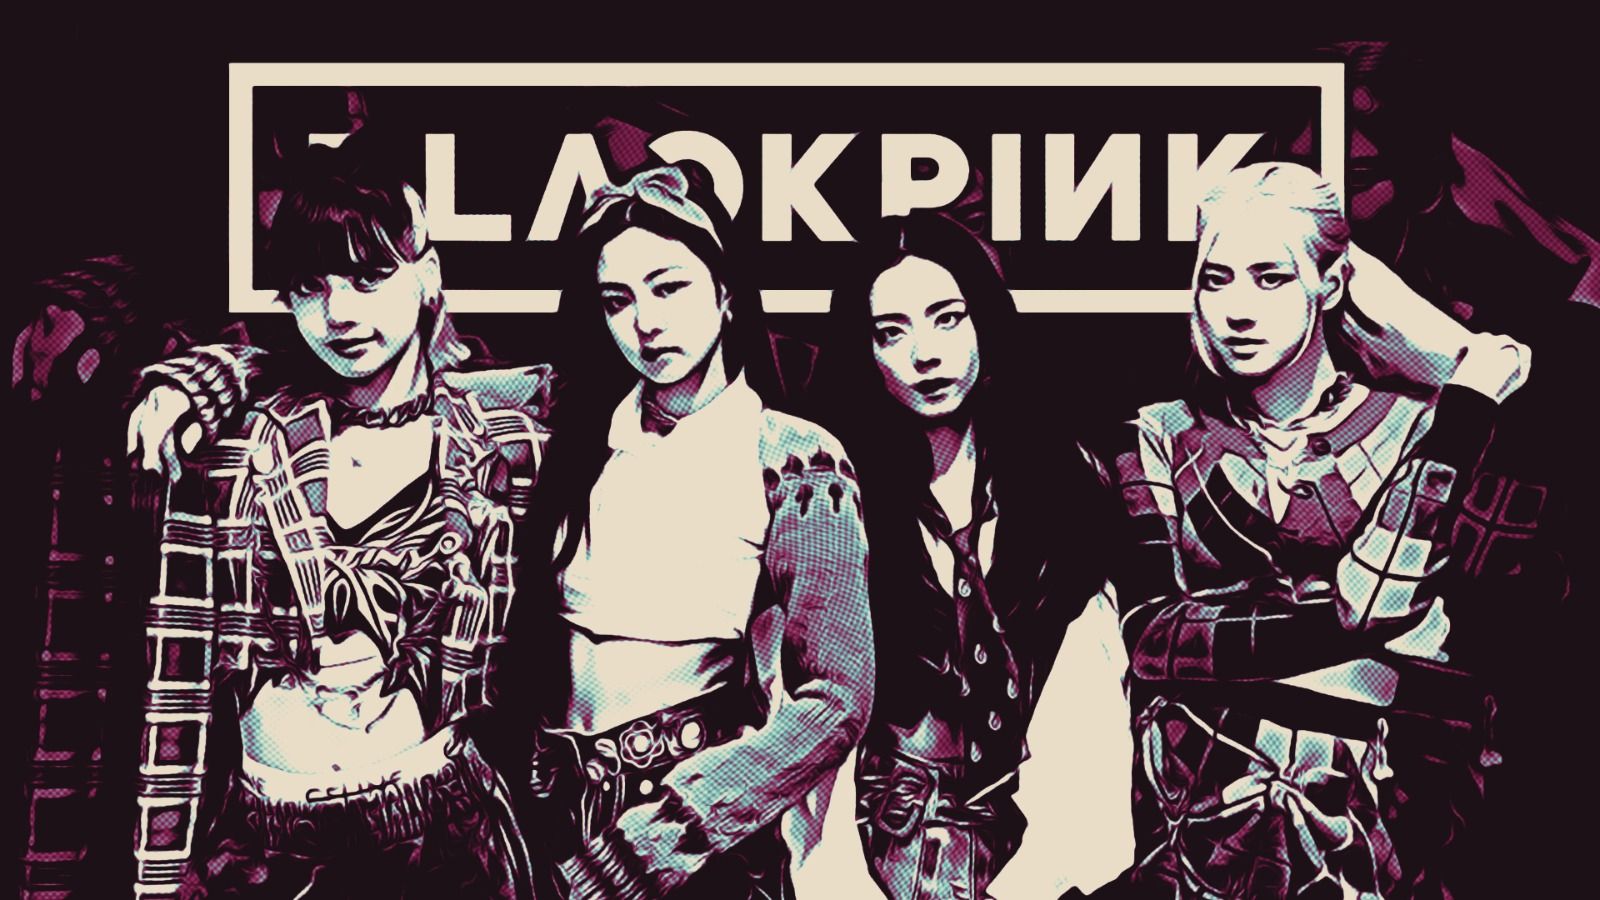 Blackpink, girl band Korea Selatan yang tampil di SUGBK. (Dede Mauladi/Skor.id)